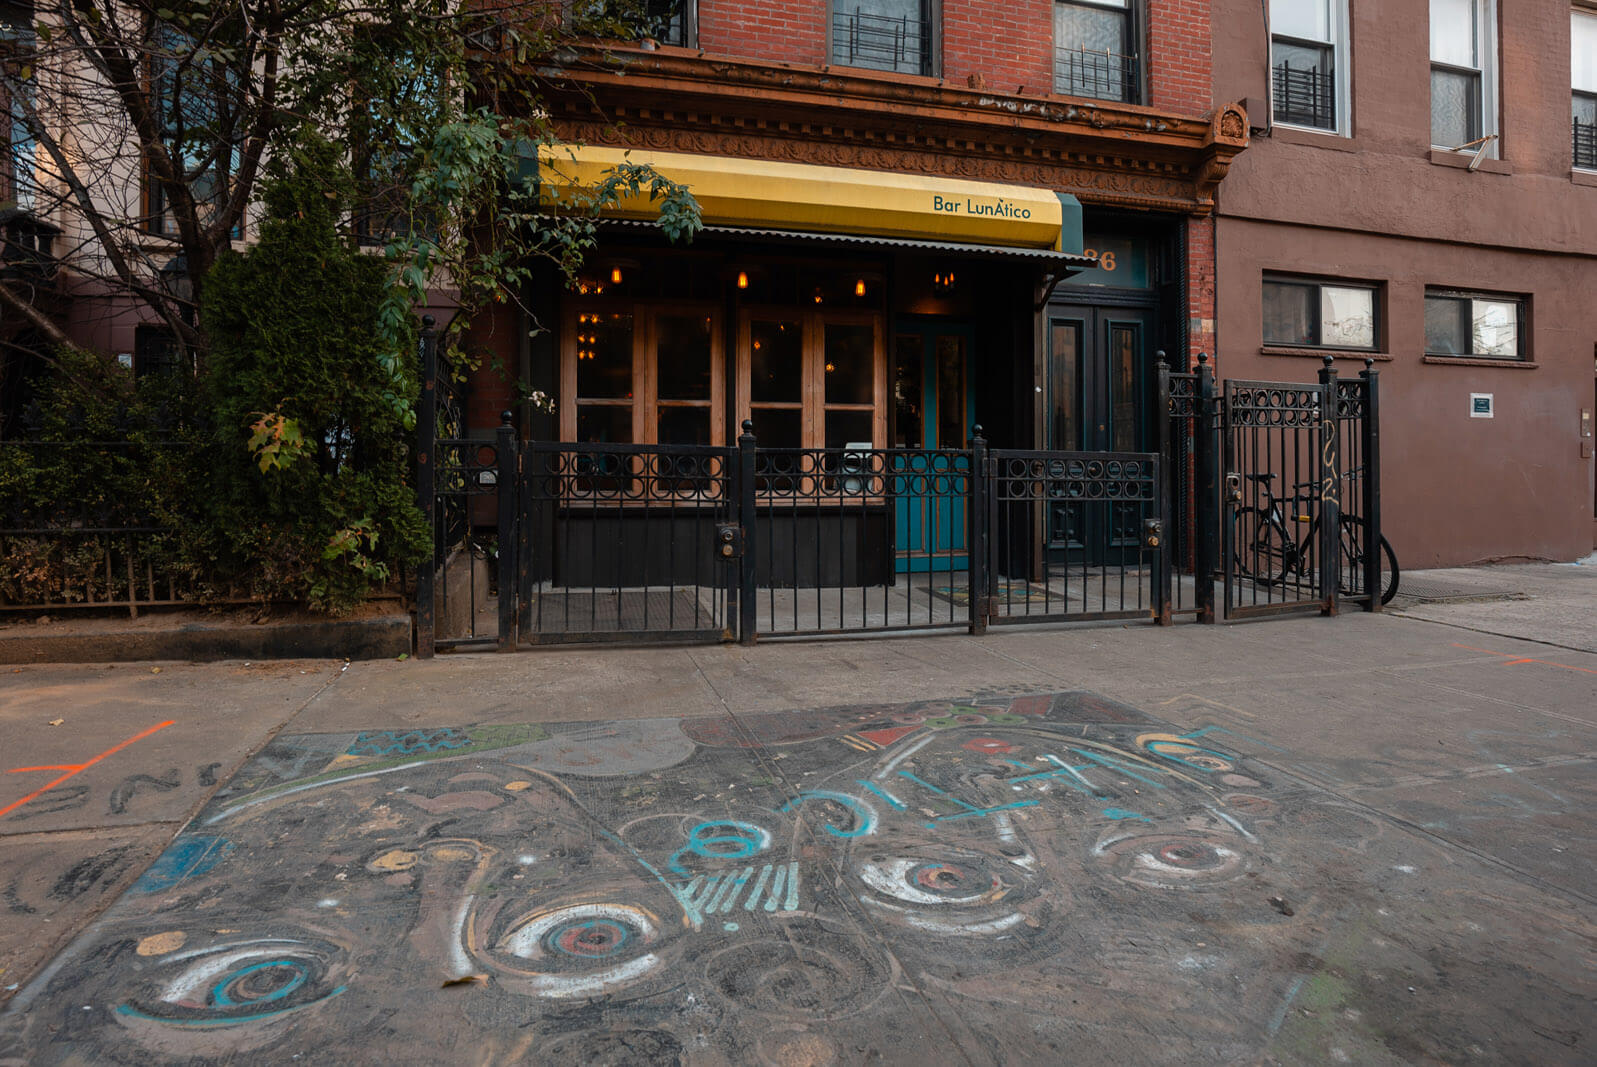 Bar LunAtico exterior and aine sidewalk art in Bed Stuy Brooklyn